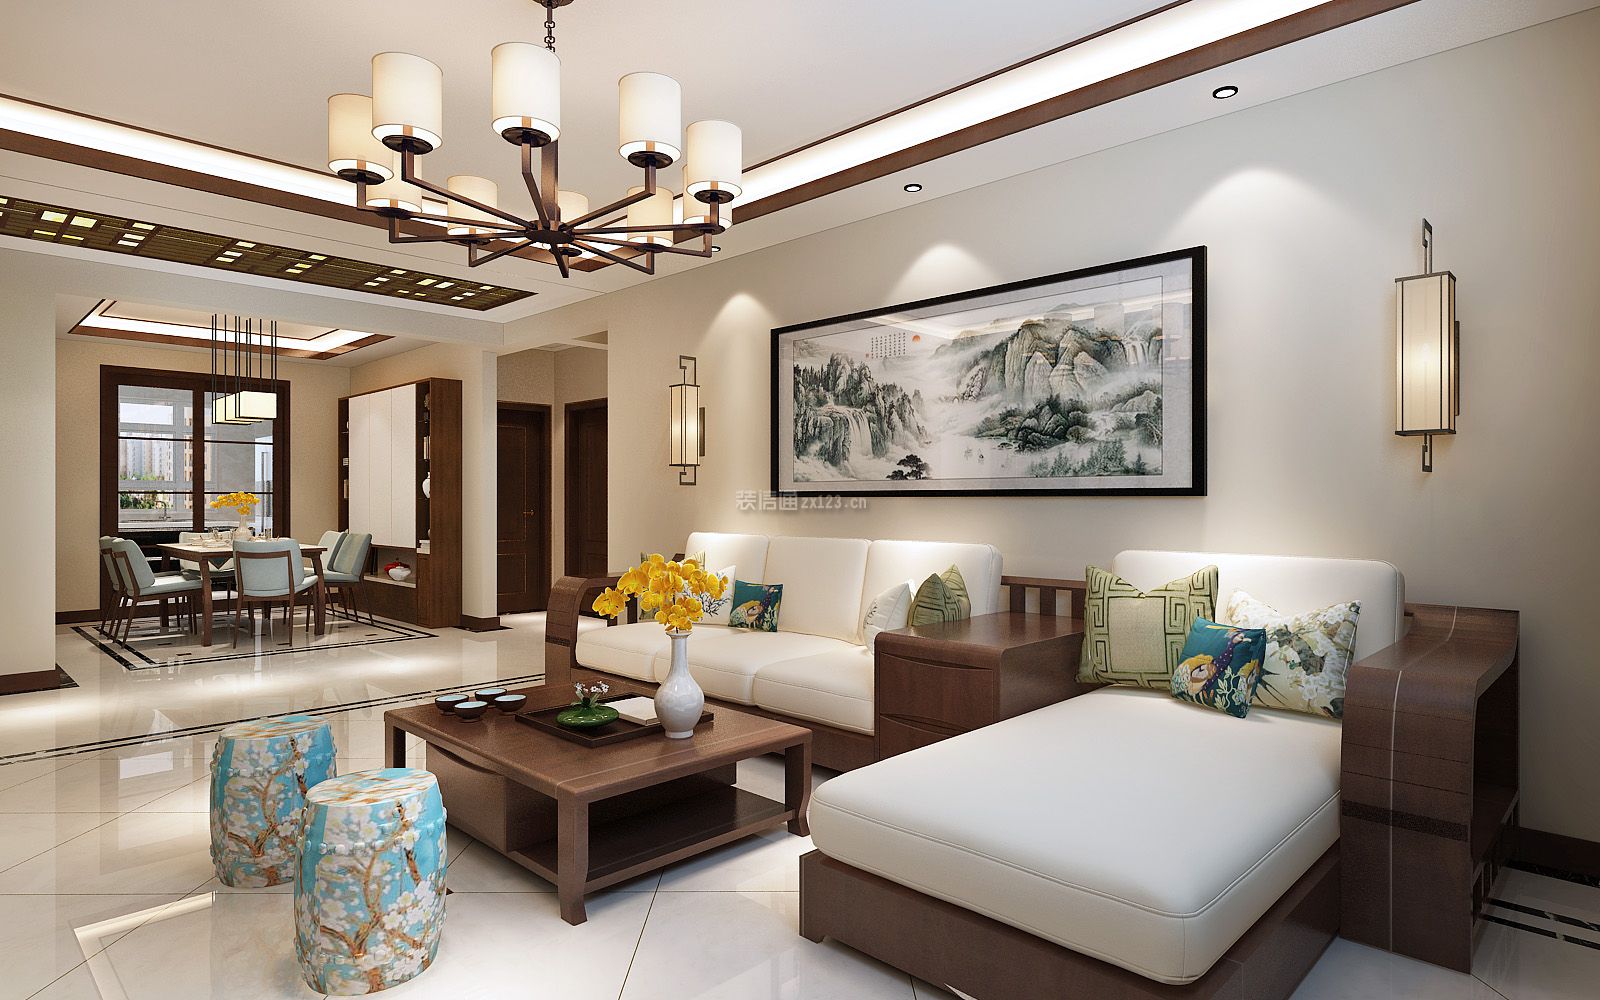 新中式148平米三居室客厅沙发墙装饰效果图